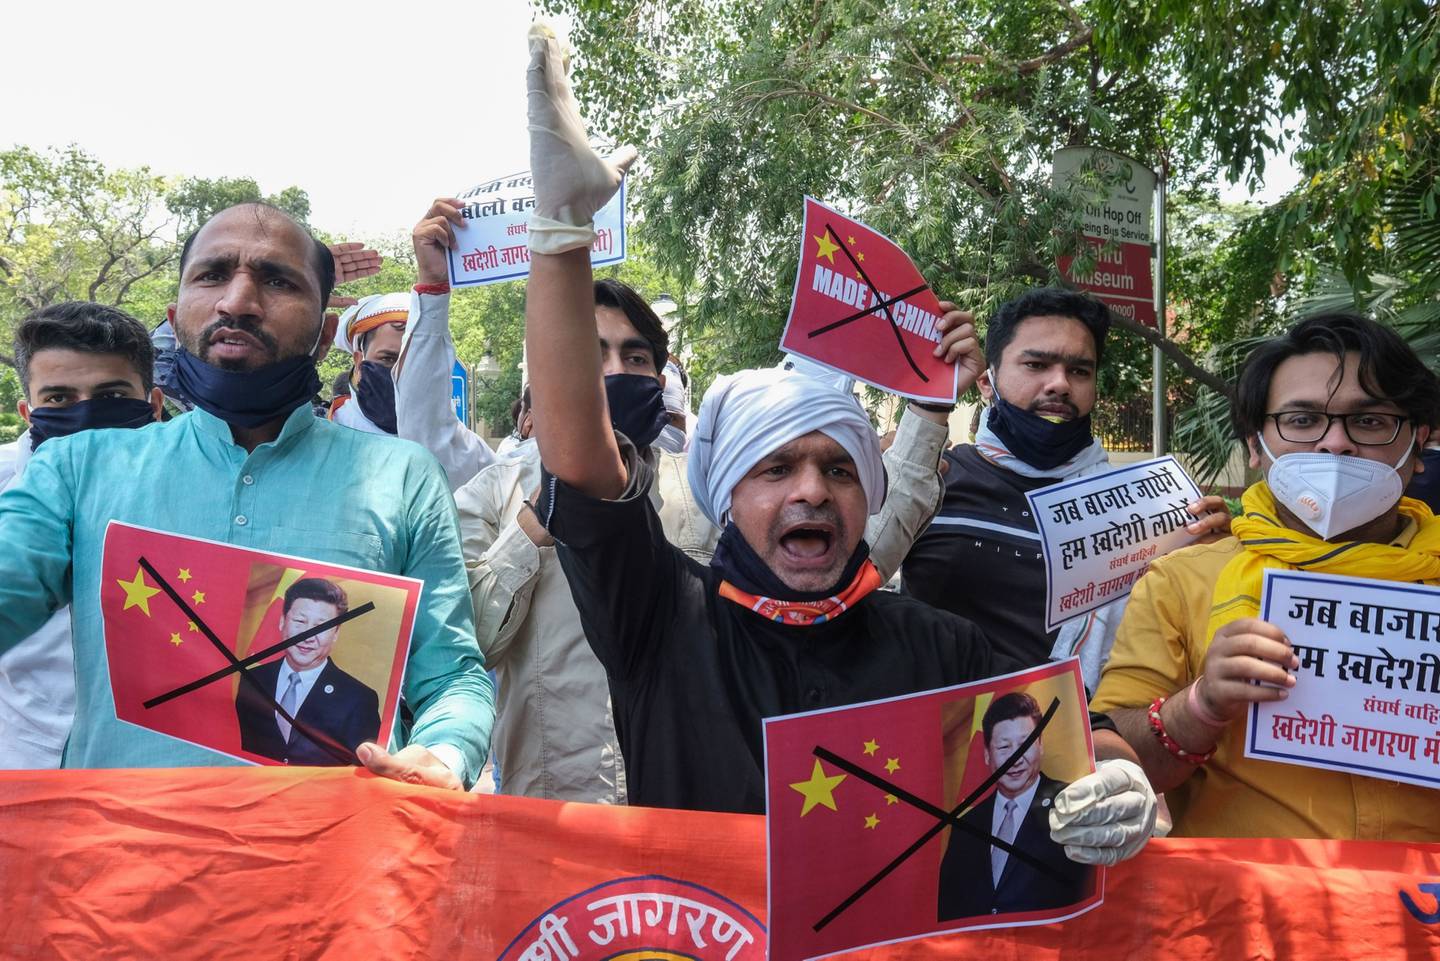 Activistas nacionalistas hindúes gritan consignas durante una protesta frente a la embajada china en Nueva Delhi en junio de 2020, tras un enfrentamiento militar de siete semanas entre India y China. Fotógrafo: T. Narayan/Bloombergdfd